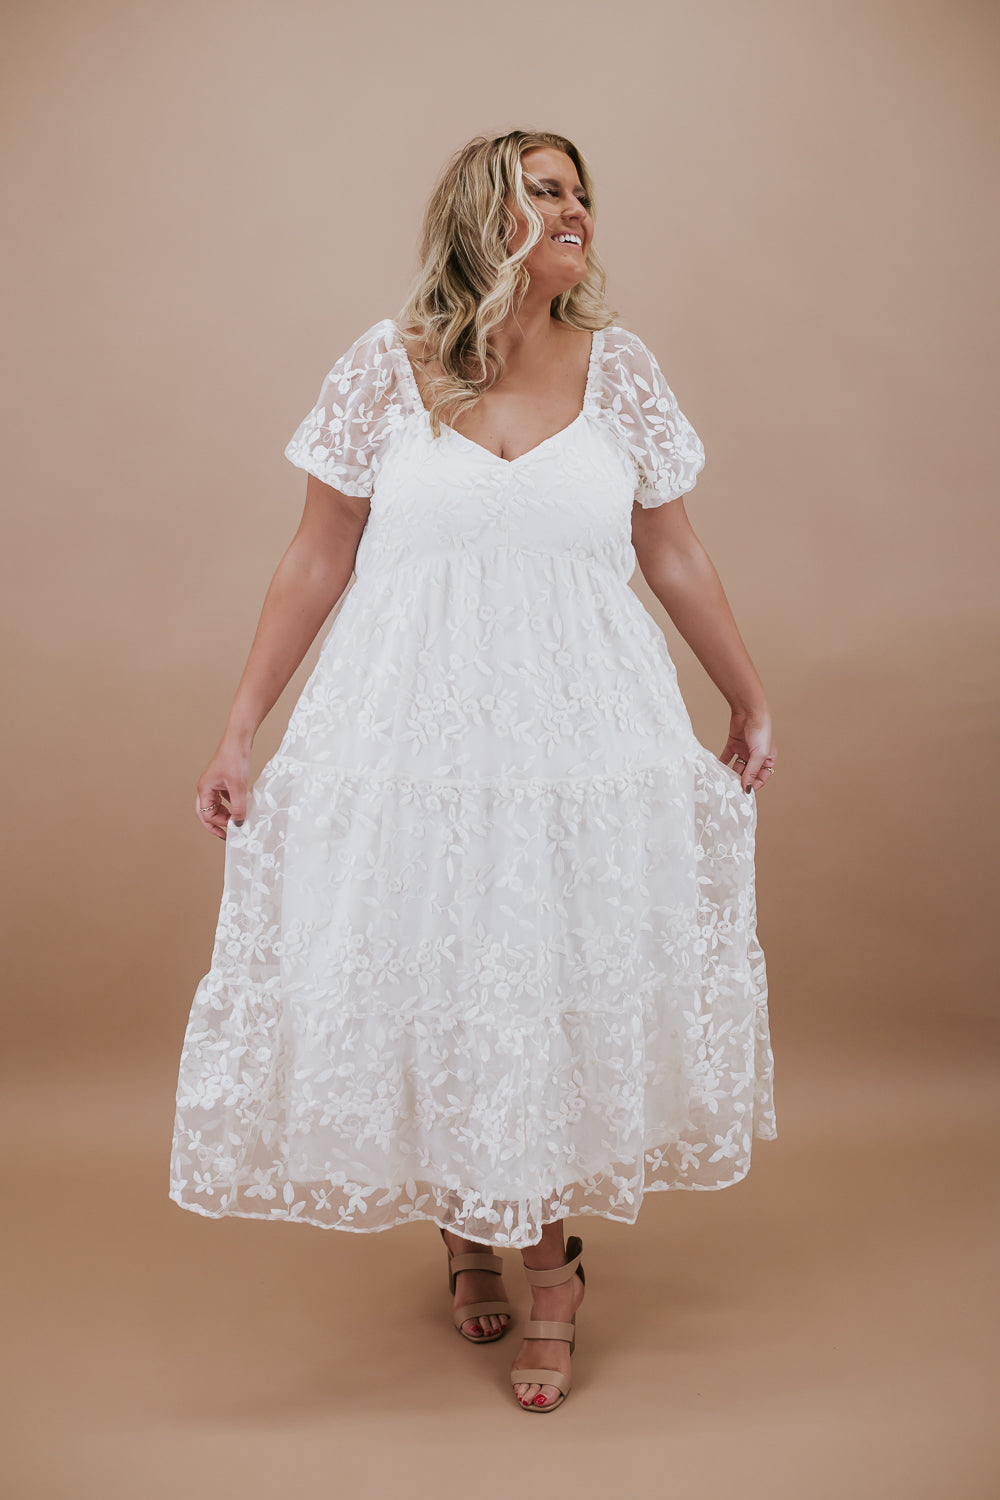 Plus size wedding dresses - biggest sizes, dresses for plus size brides.